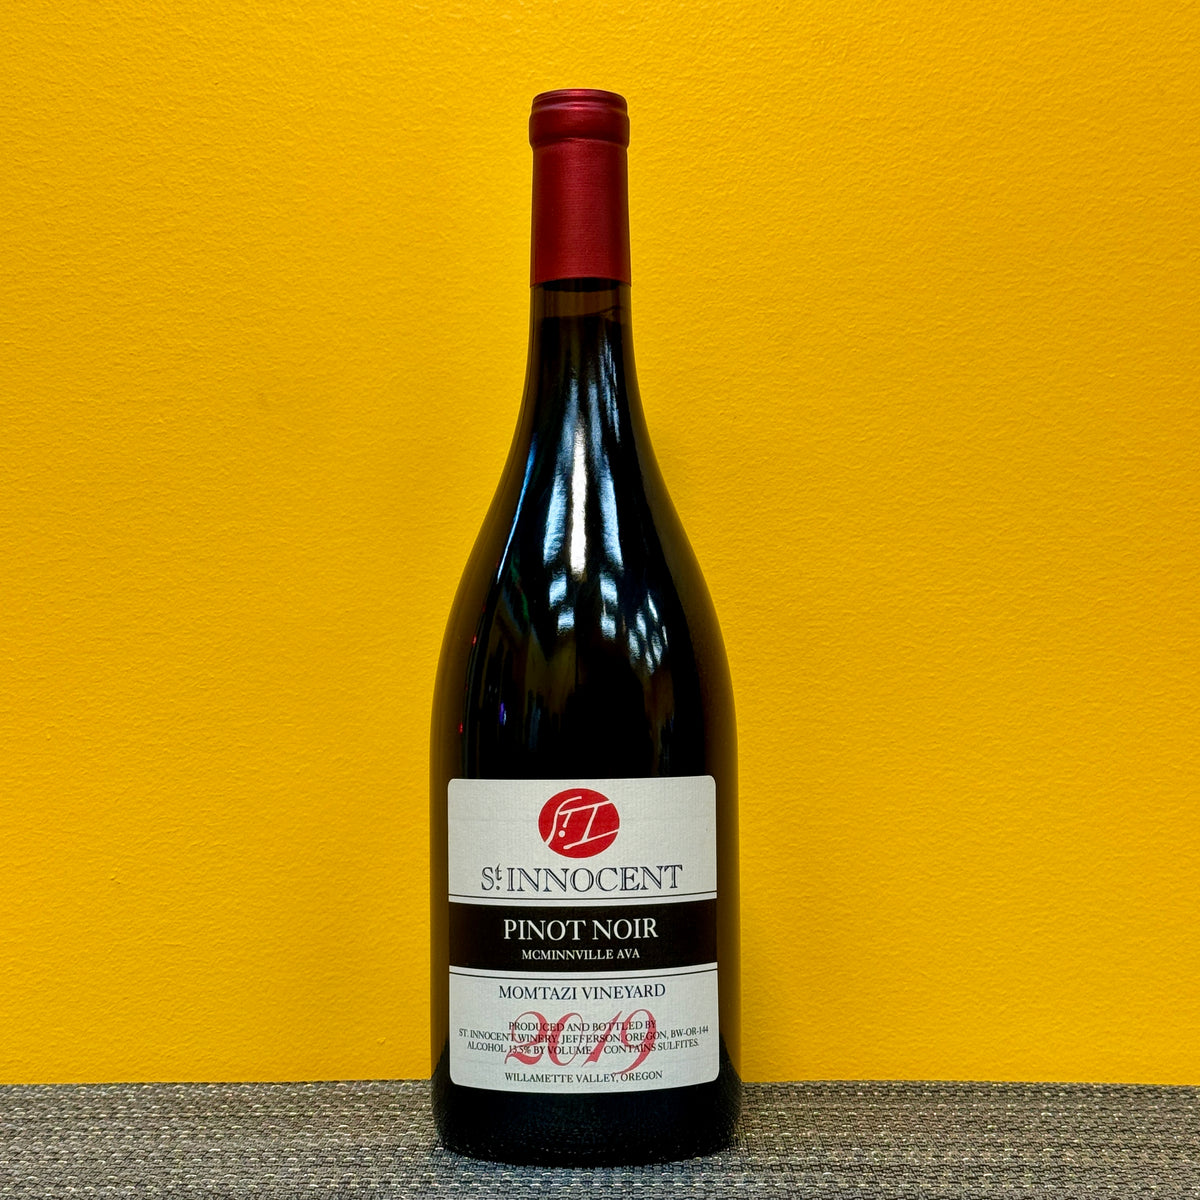 Pinot Noir Momtazi Vineyard 2019, St. Innocent